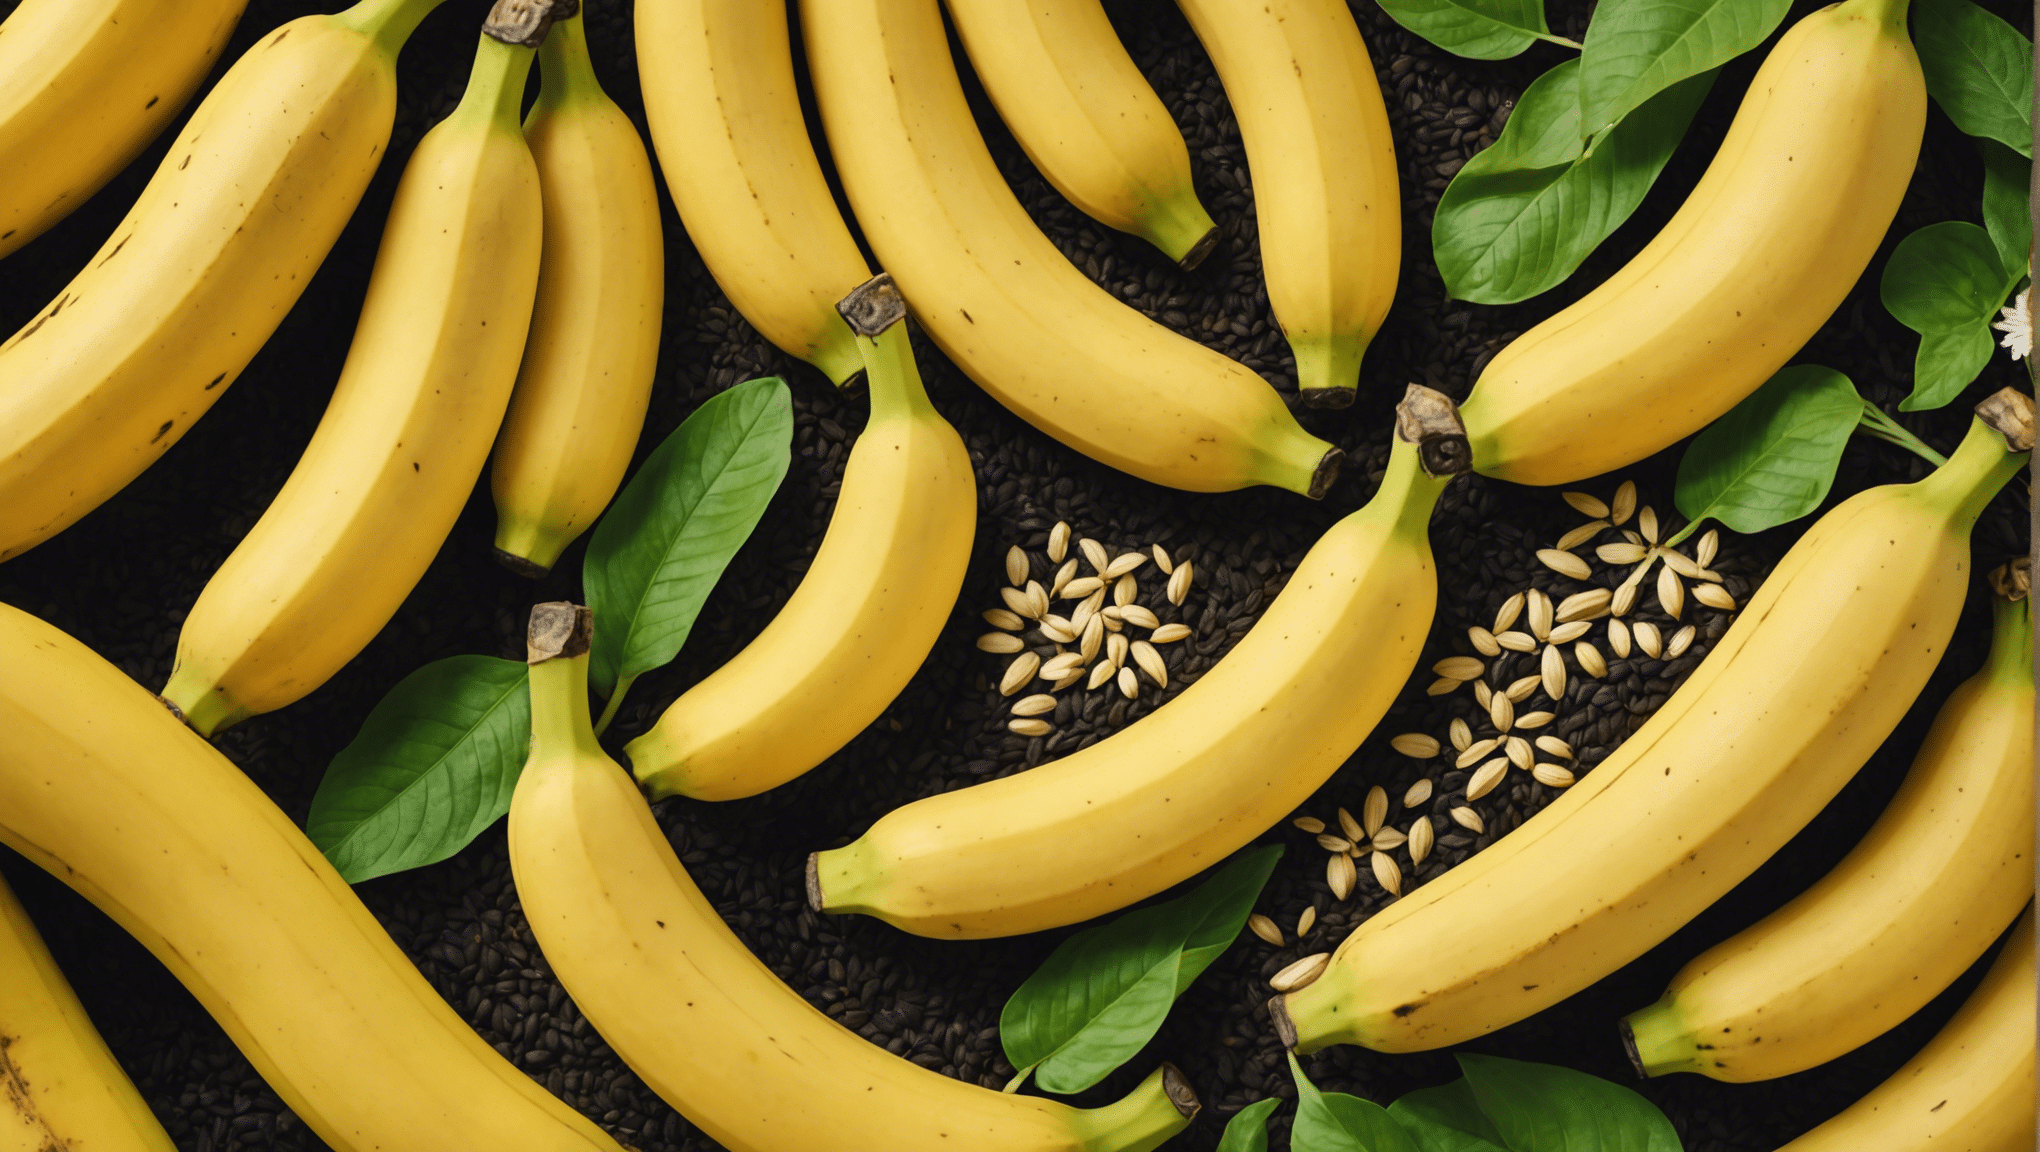 Finden Sie mit unserem umfassenden Leitfaden heraus, ob der Verzehr von Bananen mit Kernen unbedenklich ist. Informieren Sie sich über die potenziellen Risiken und Vorteile des Verzehrs von Bananen mit Kernen.